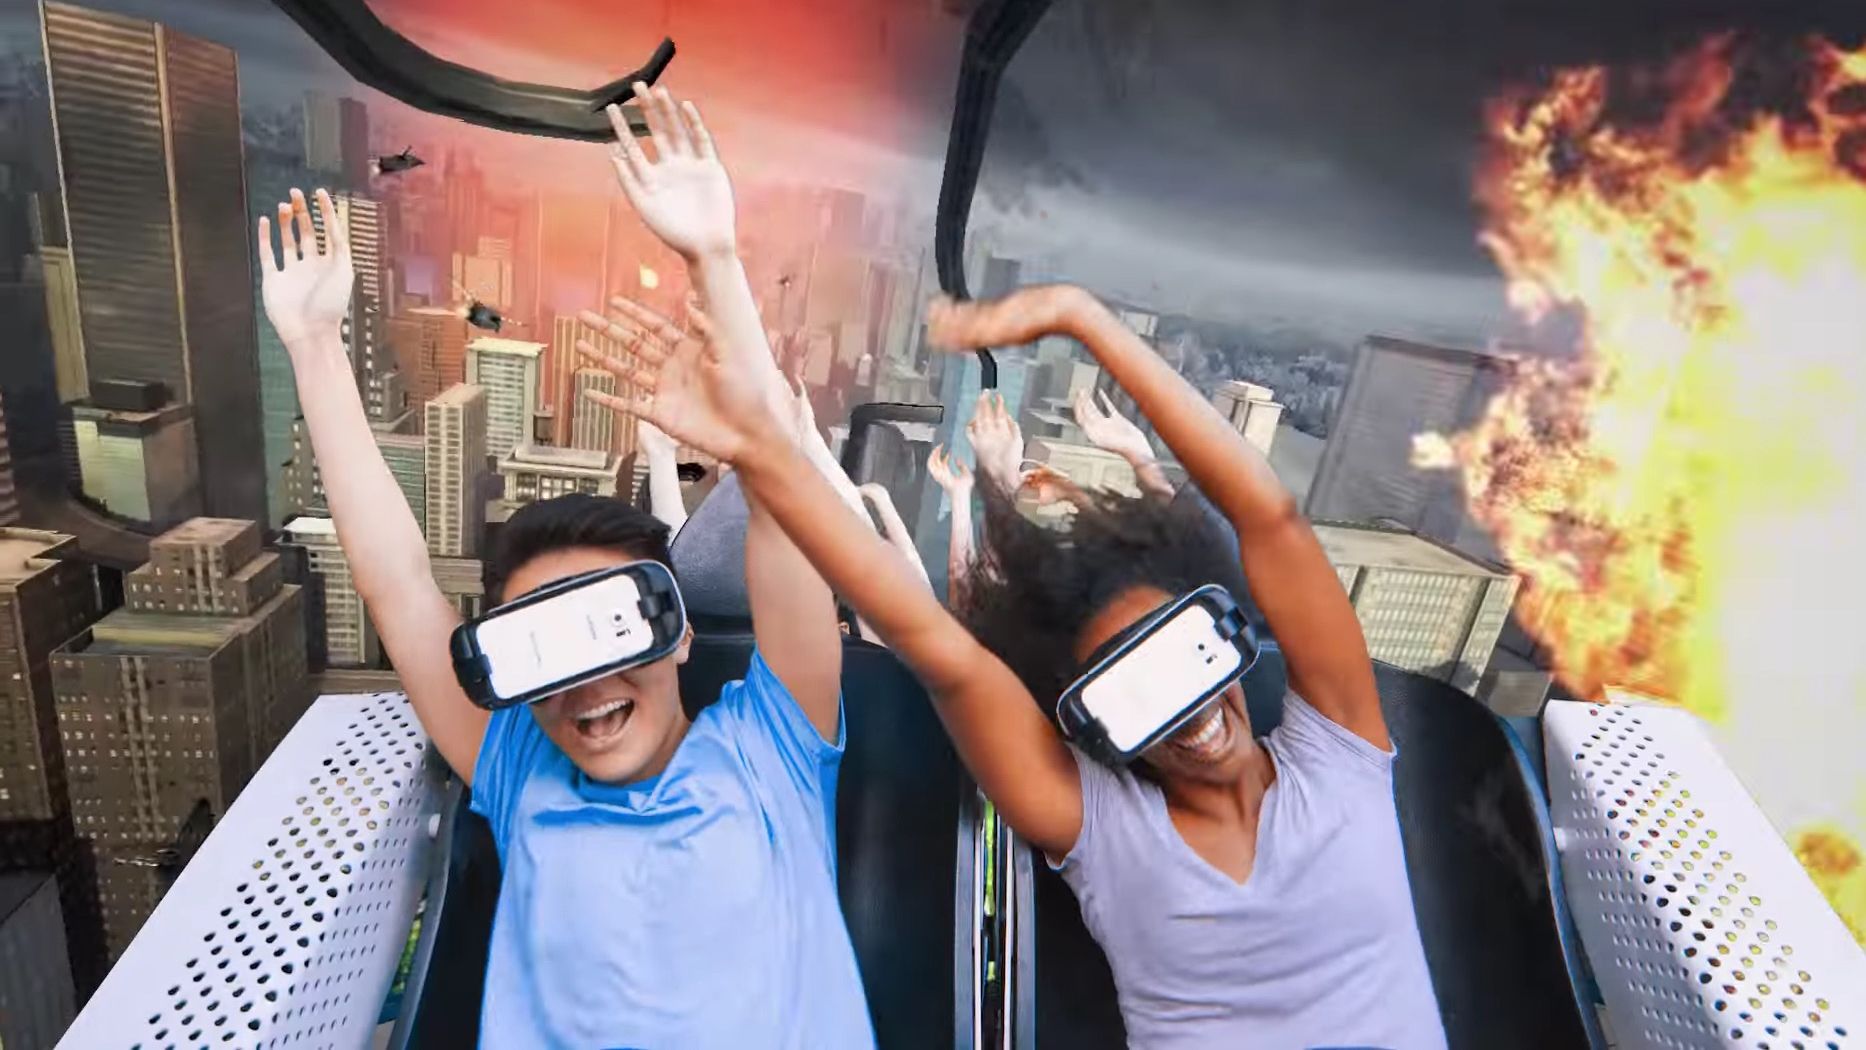 Последняя реальность 26. Виртуальная реальность горки. Виртуальная реальность веселье. Очки виртуальной реальности крутые. Девушки дополненной реальности.